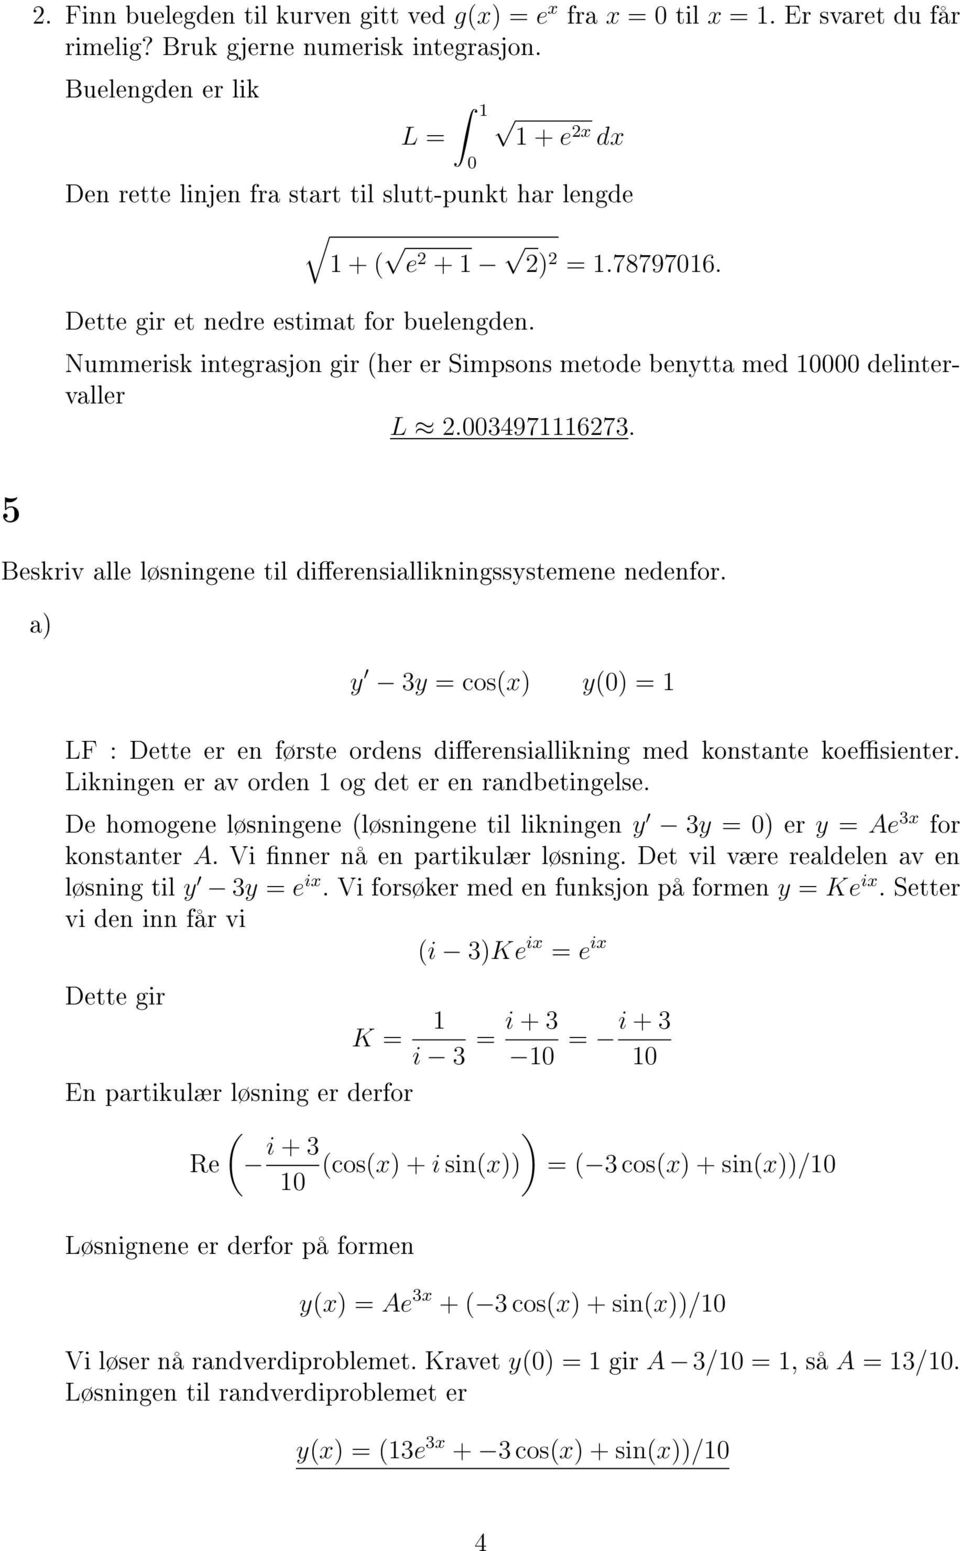 Nummerisk integrasjon gir (her er Simpsons metode benytta med delintervaller L.3497673. 5 Beskriv alle løsningene til dierensiallikningssystemene nedenfor.